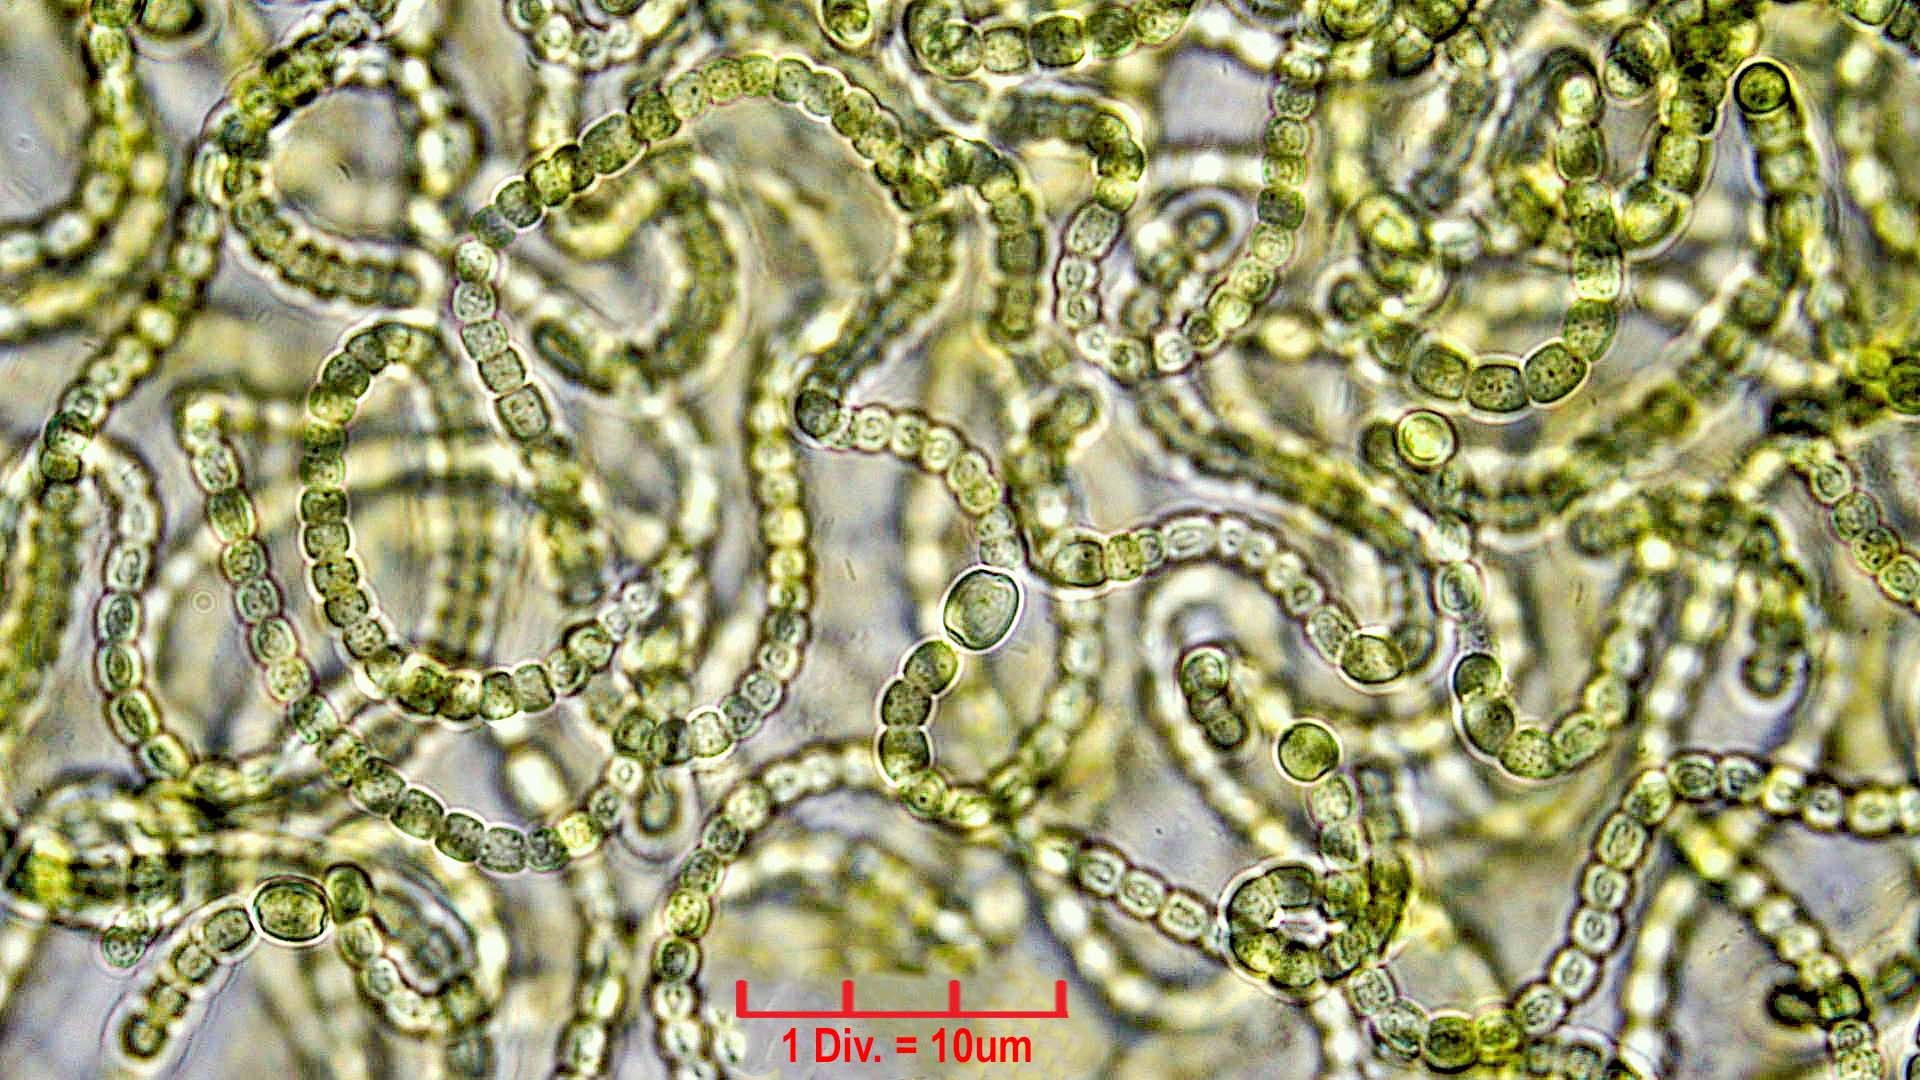 ./Cyanobacteria/Nostocales/Nostocaceae/Nostoc/verrucosum/nostoc-verrucosum-610.jpg